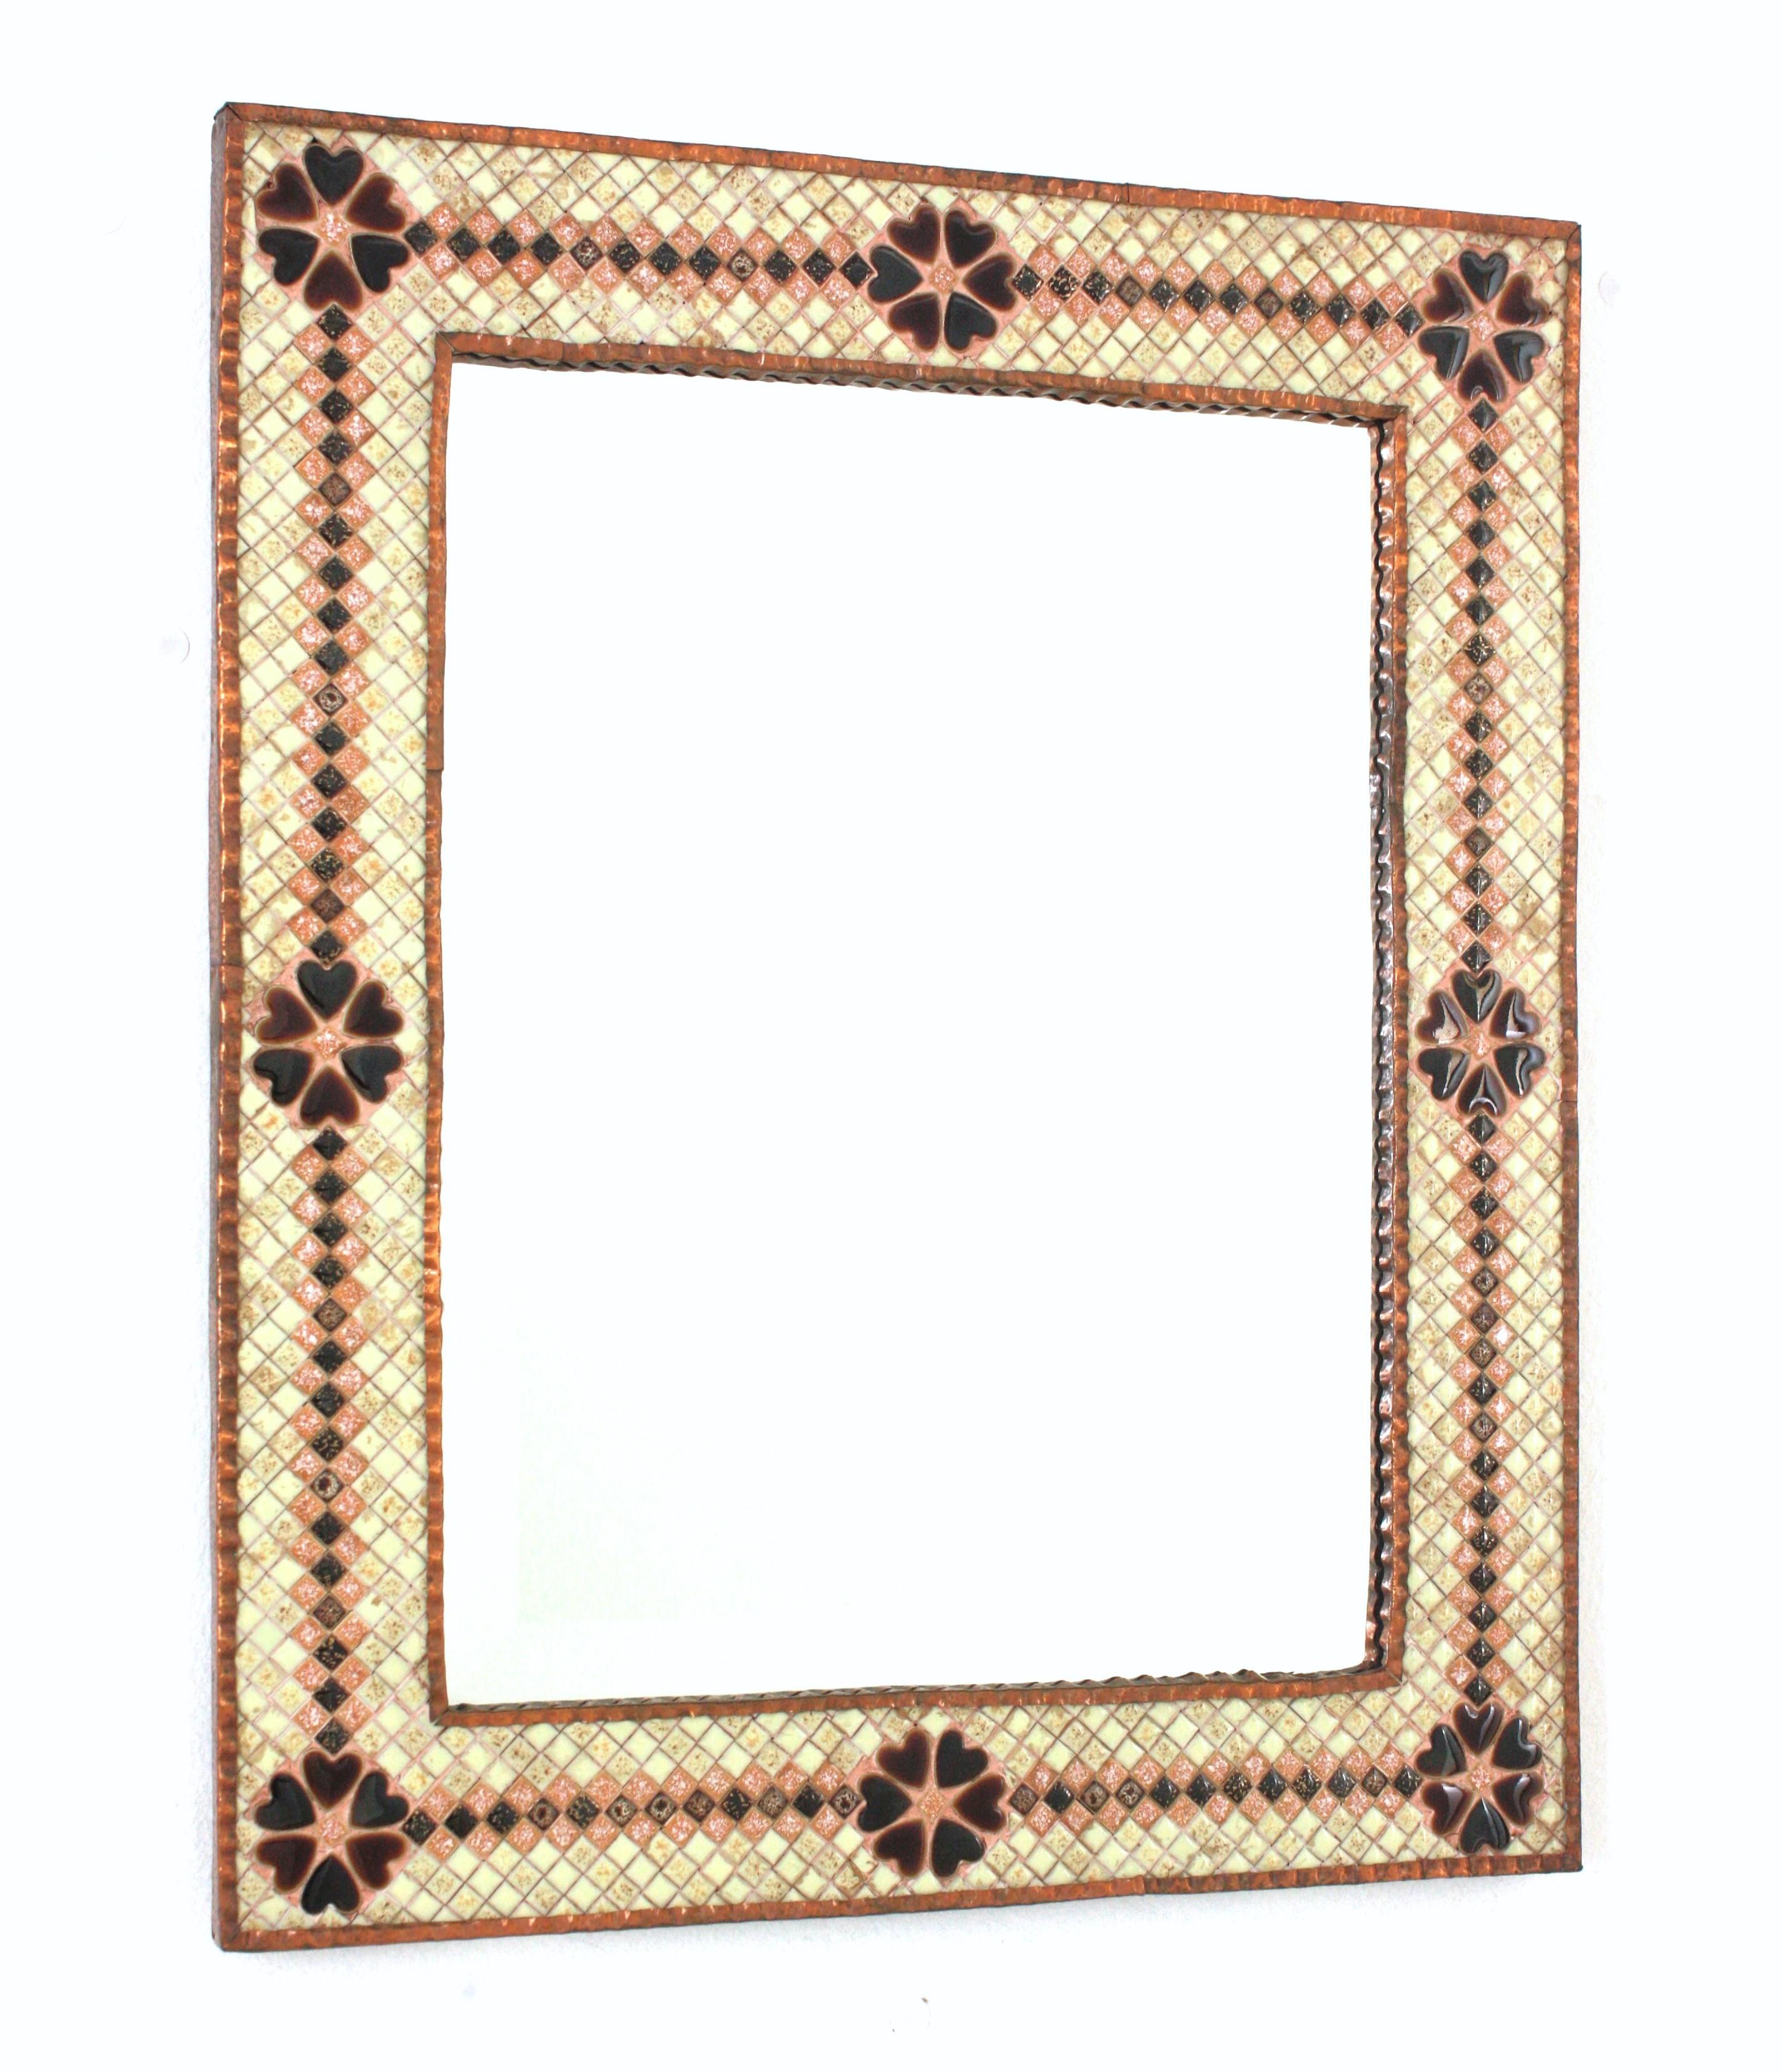 Wandspiegel aus glasierter Keramik und Kupfer mit Mosaikrahmen
Rechteckiger Spiegel aus der Jahrhundertmitte, umrahmt von einem Mosaik aus quadratischen und herzförmigen glasierten Keramikfliesen, Spanien, 1950er-1960er Jahre.
Auffälliger,